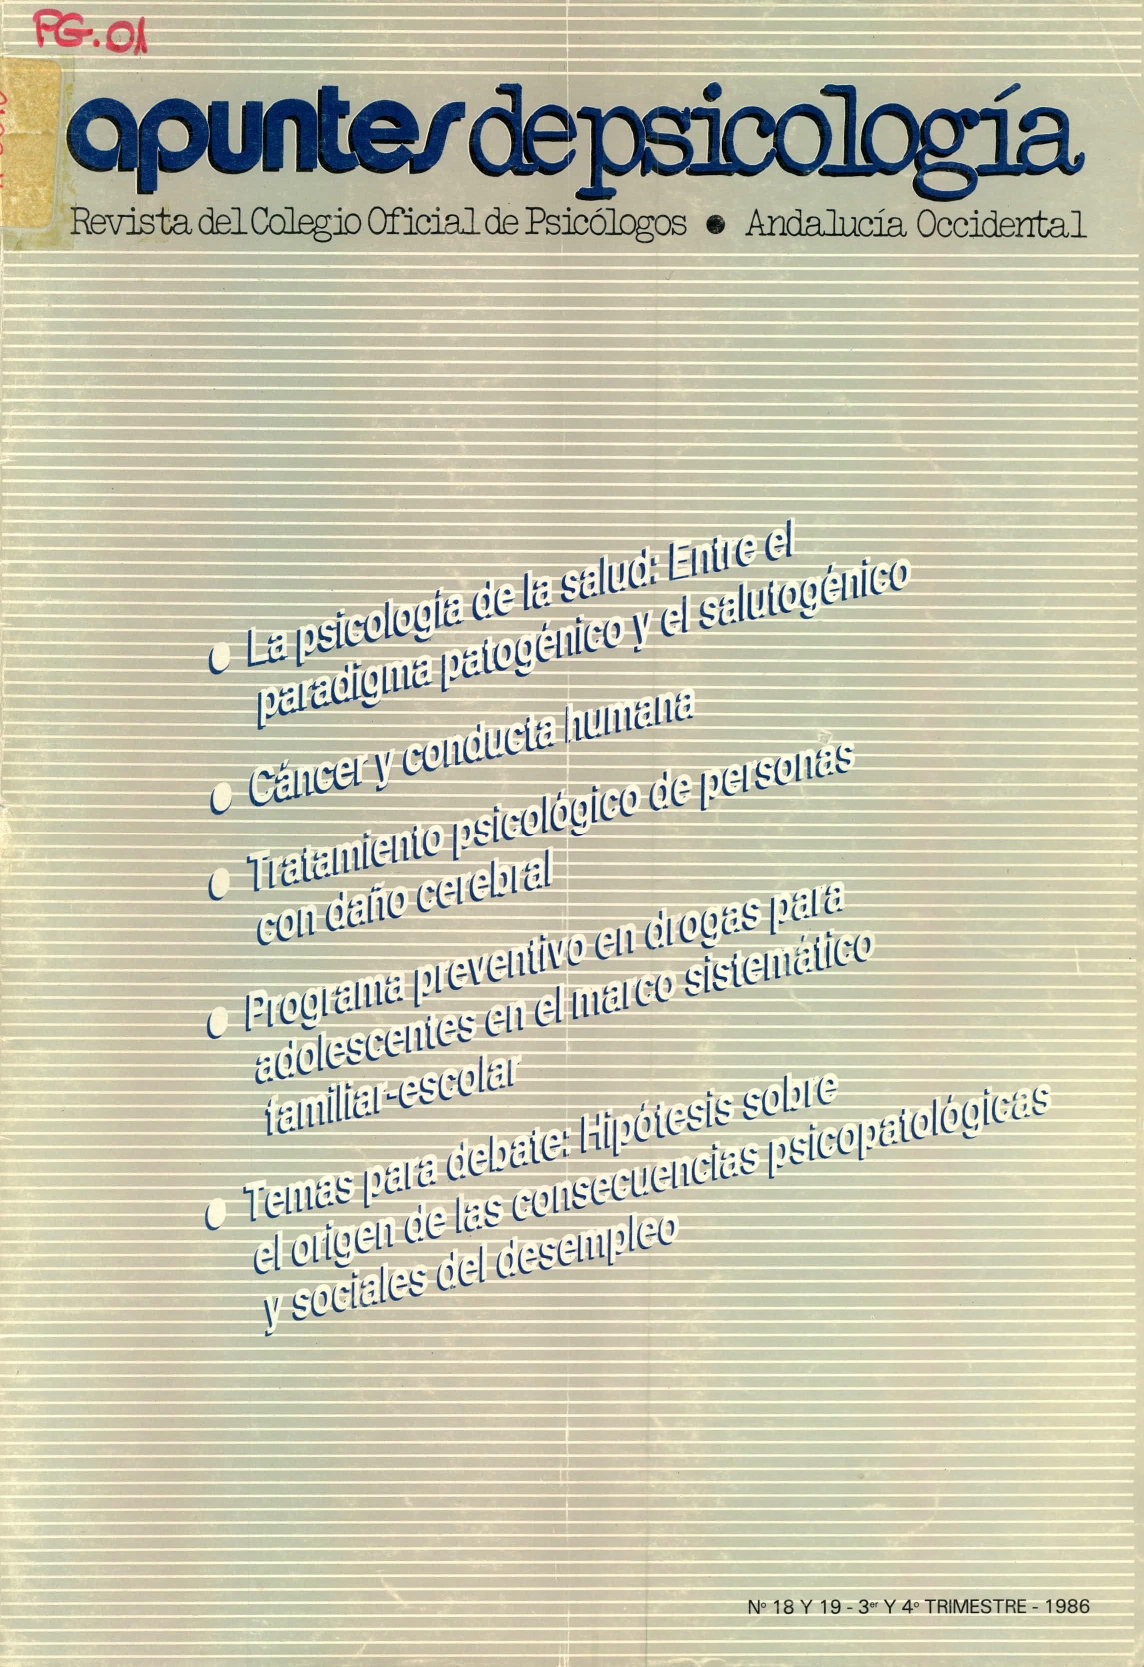 					View No. 18-19 (1986)
				